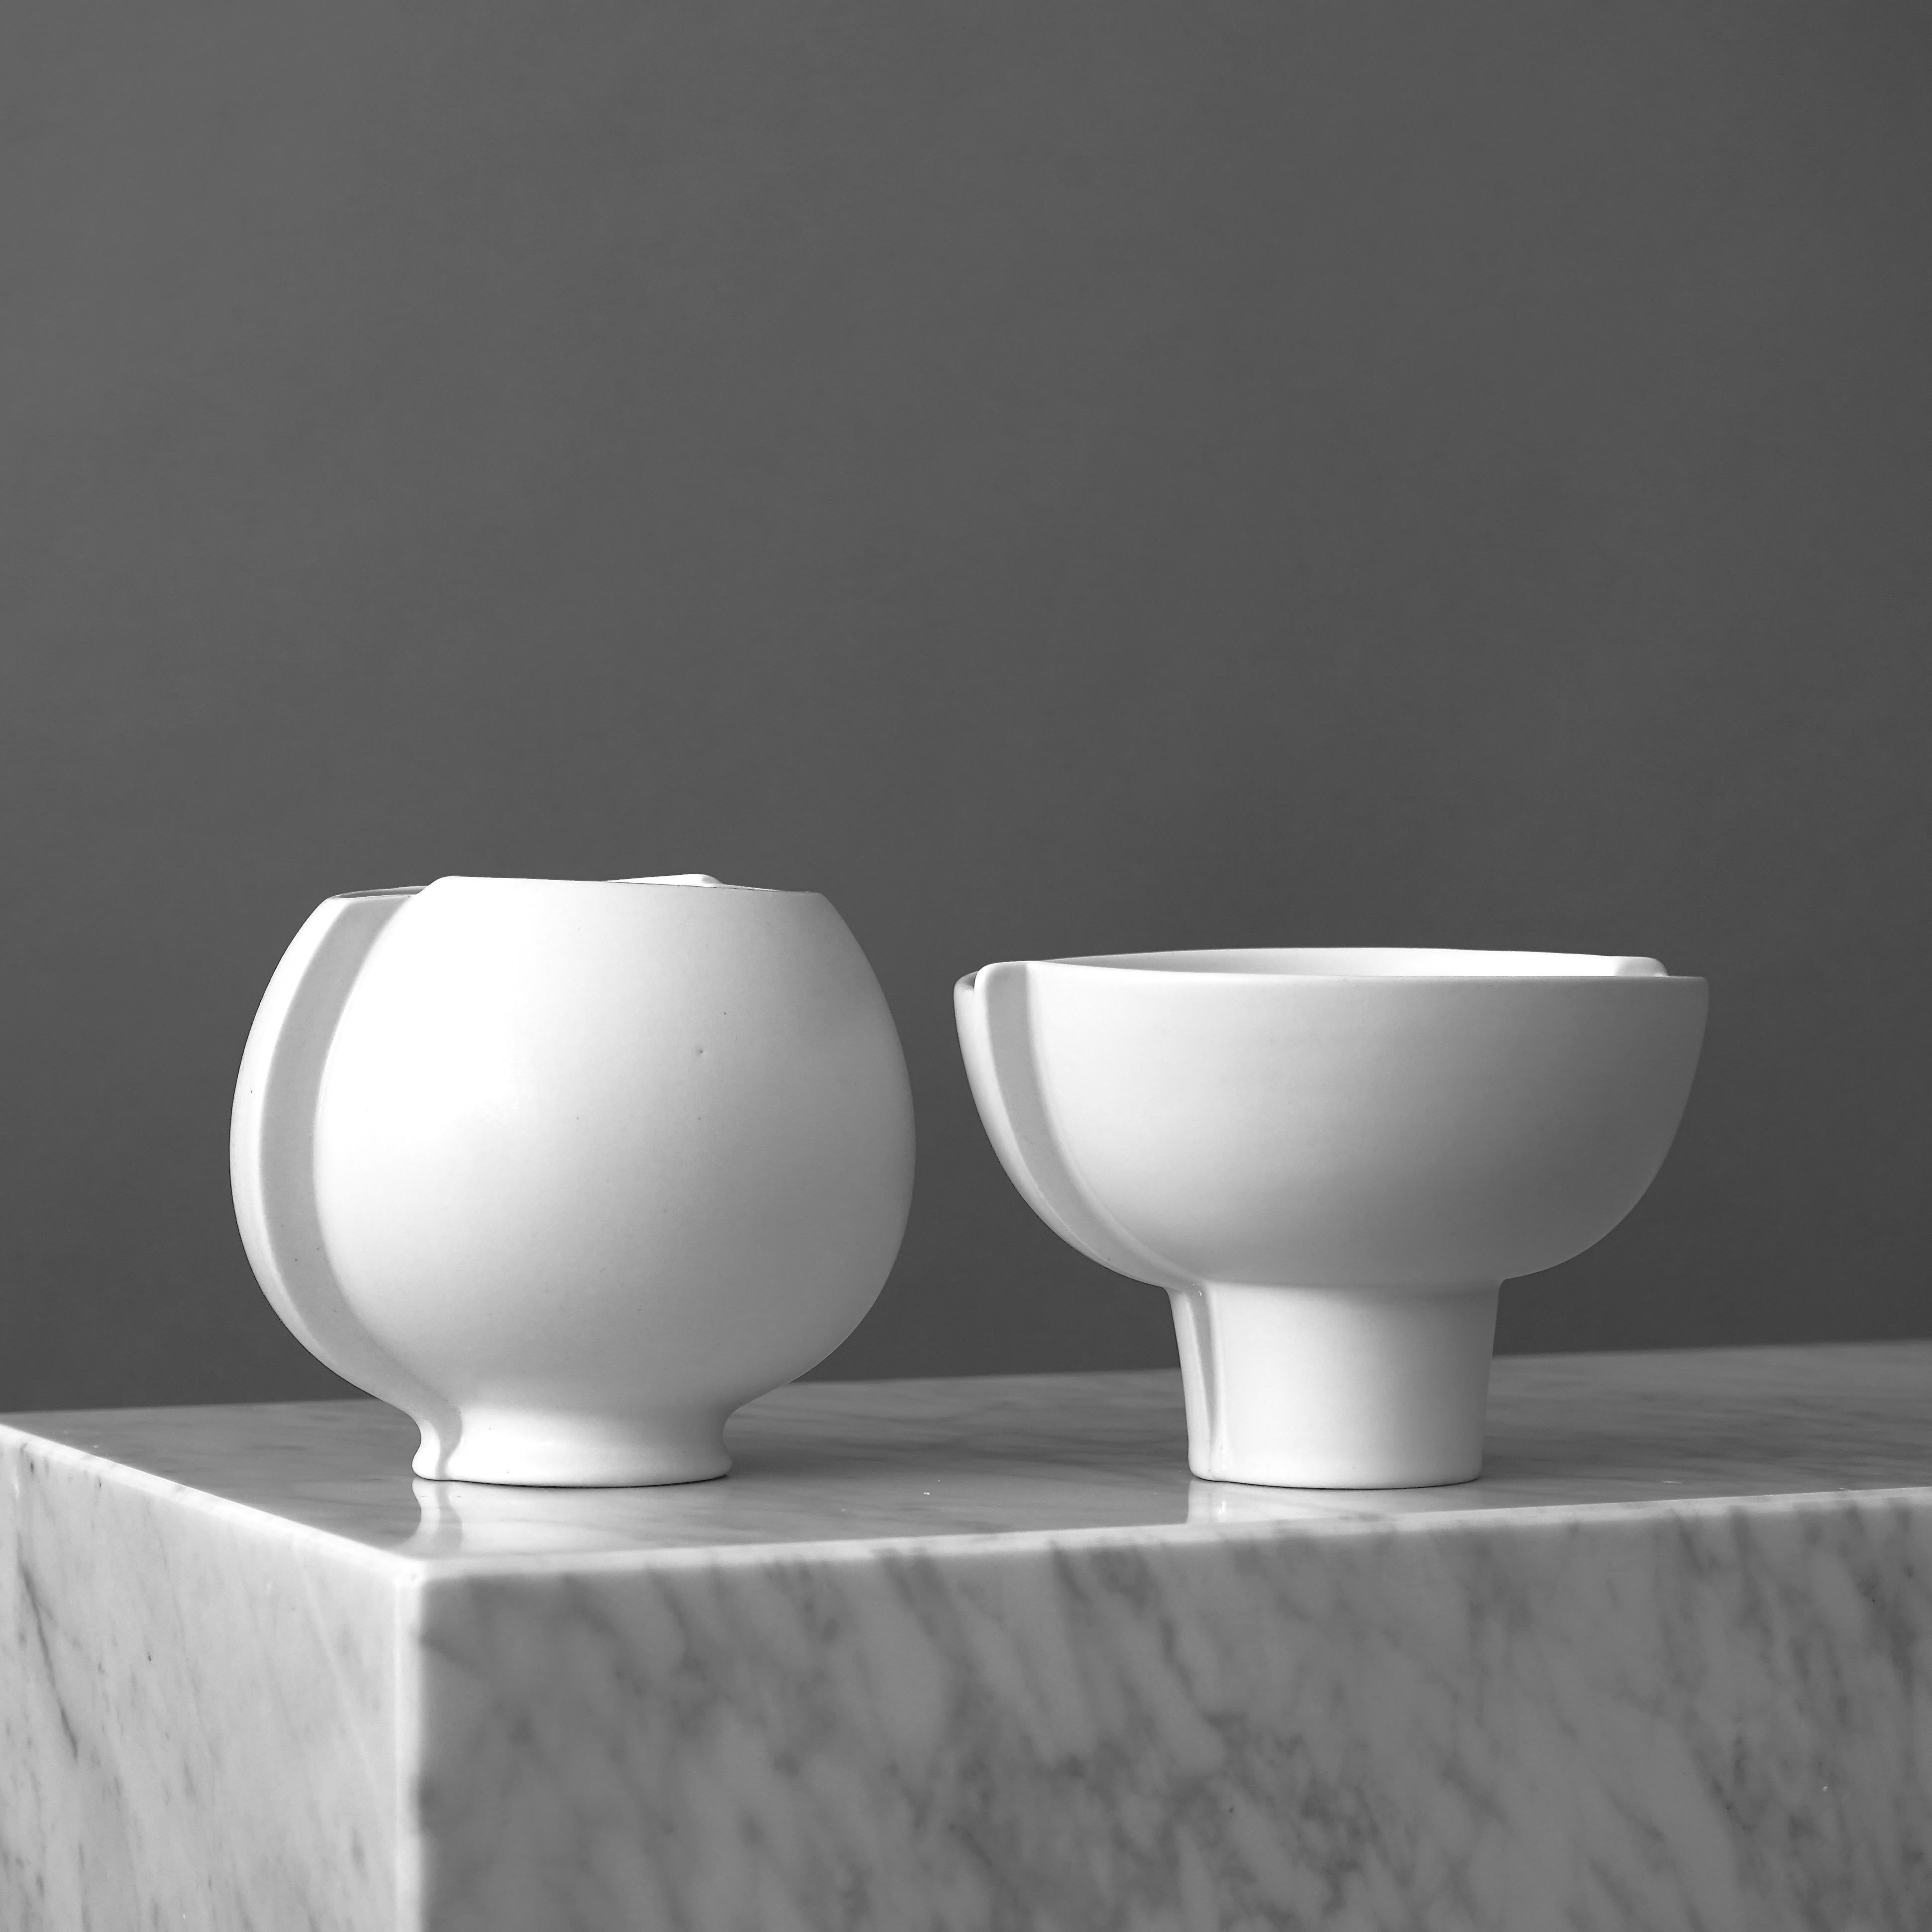 Ceramic 'Surrea' Vase and Bowl by Wilhelm Kåge for Gustavsberg Studio, Sweden, 1950s For Sale